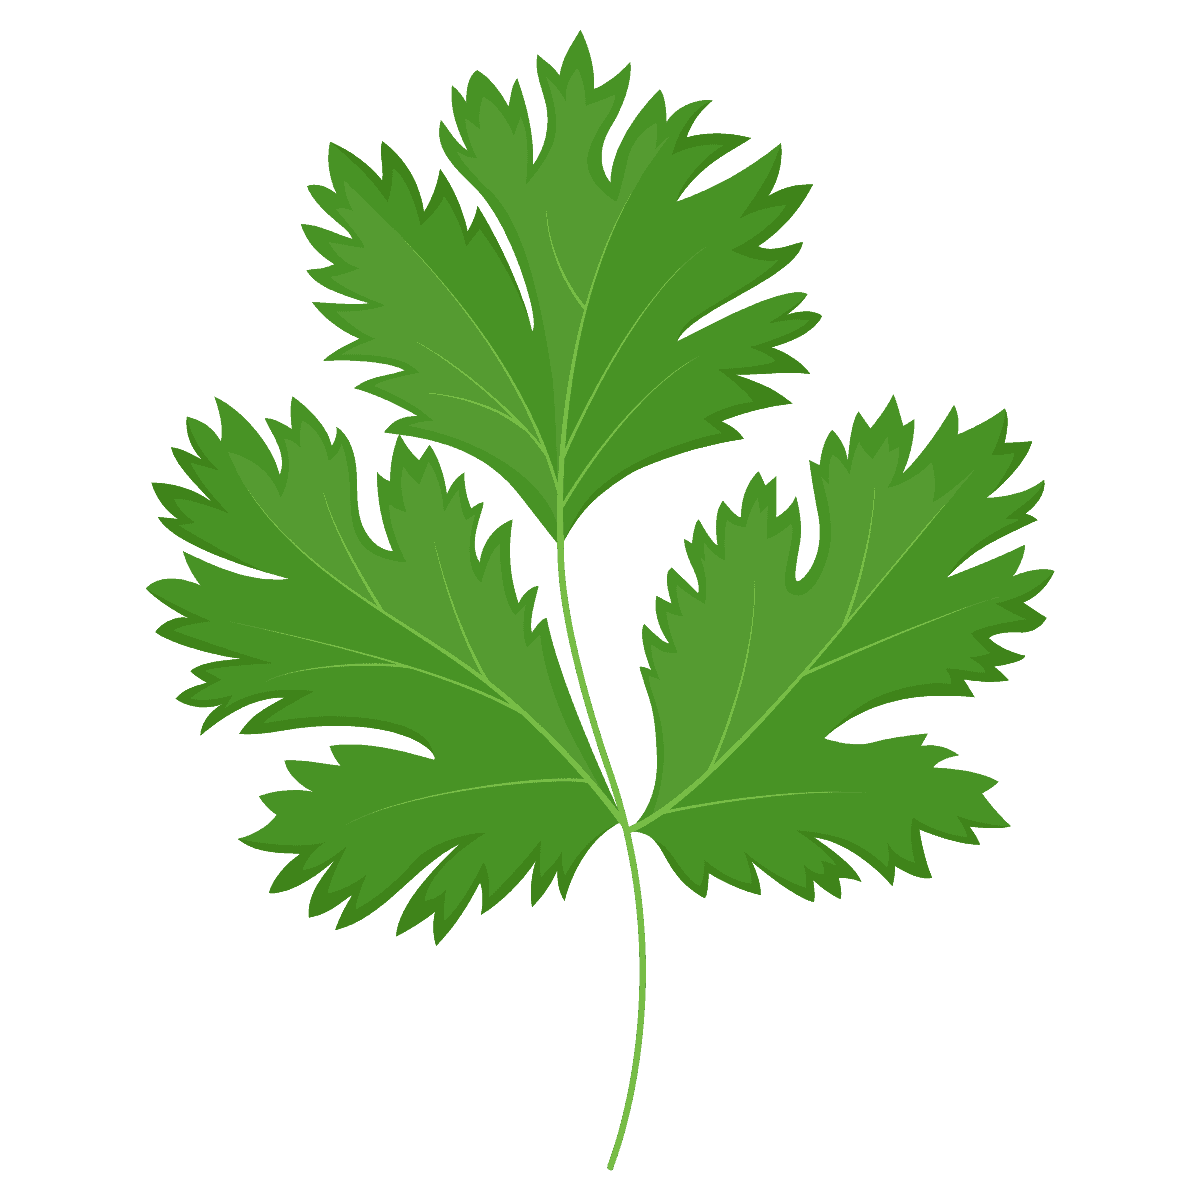 Color drawing of a sprig of cilantro.